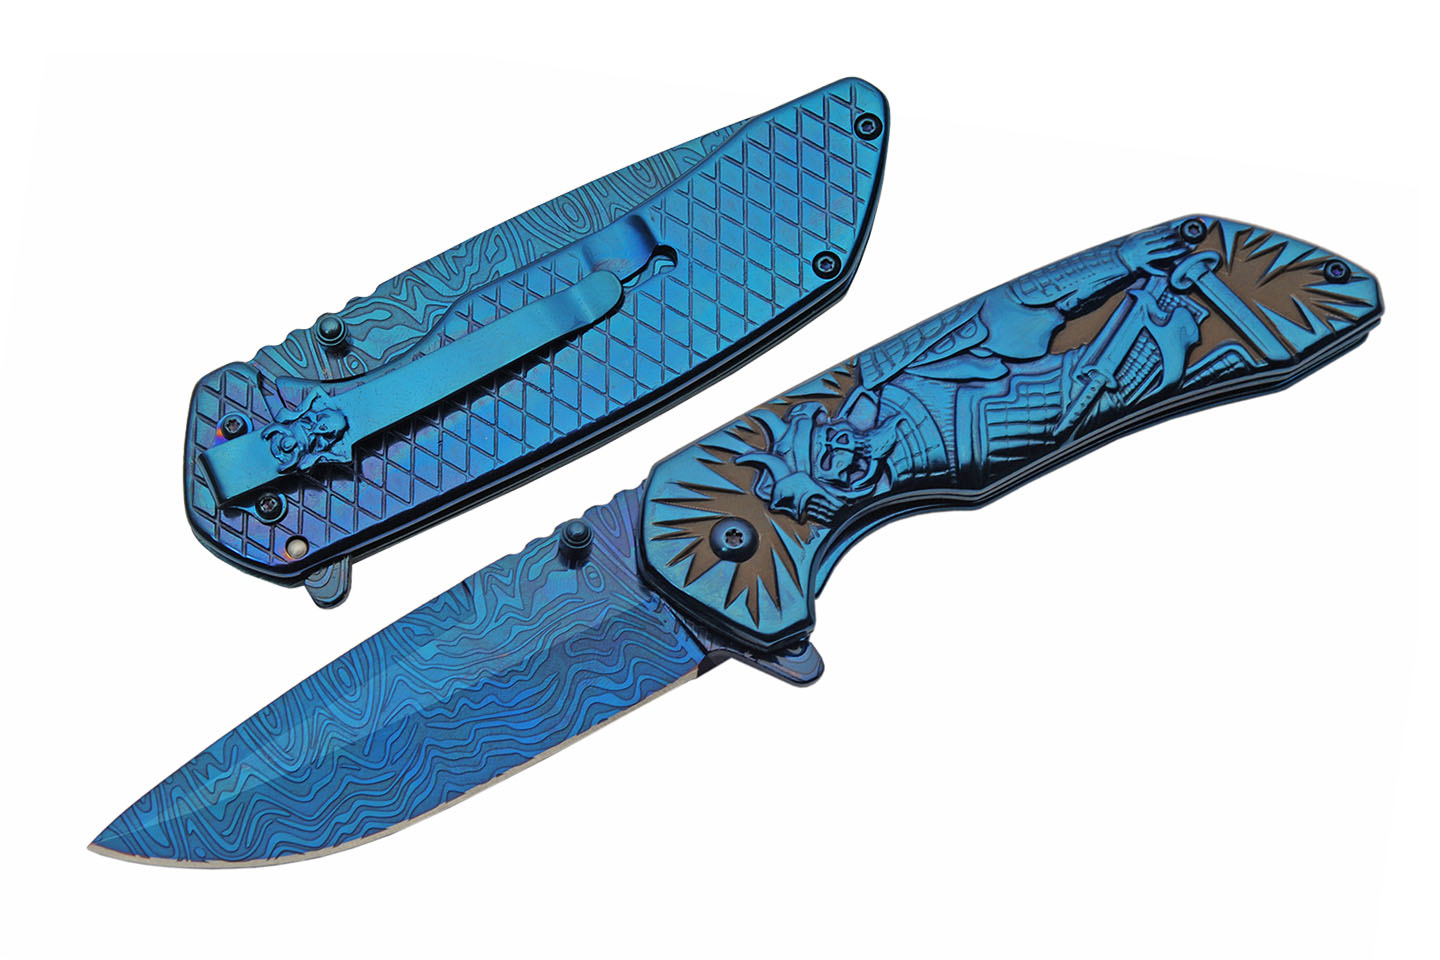 Folding Knife 3.5In Blade Blue Black Skull Samurai Warrior EDC